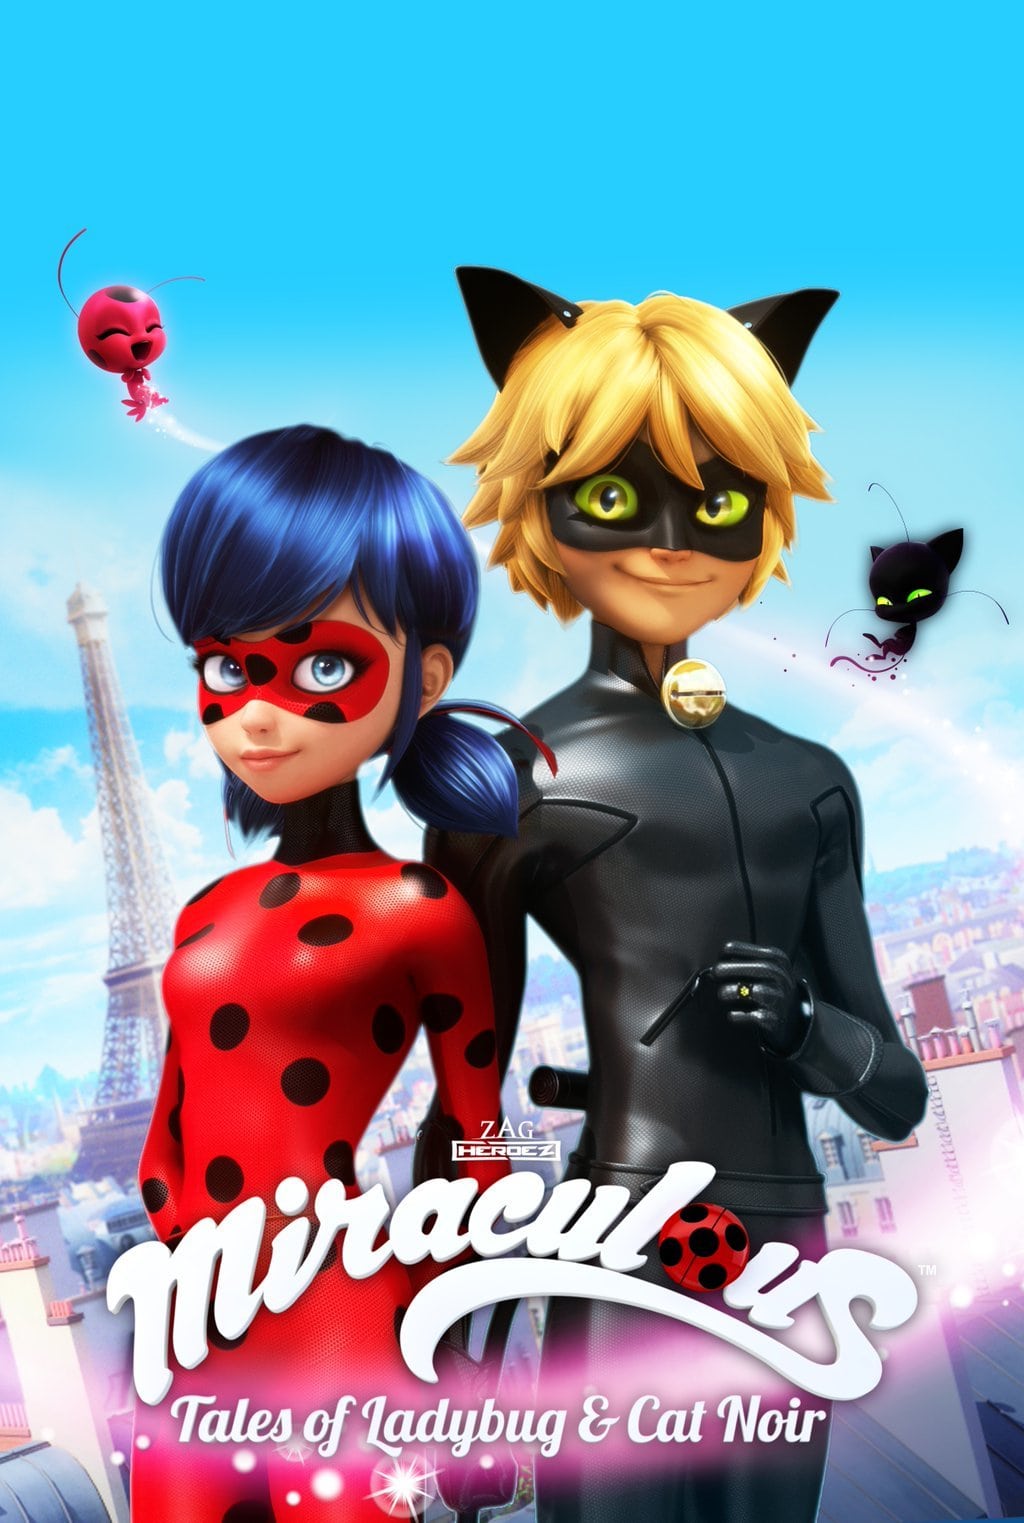 Miraculous: As Aventuras de Ladybug ganha novo trailer; veja